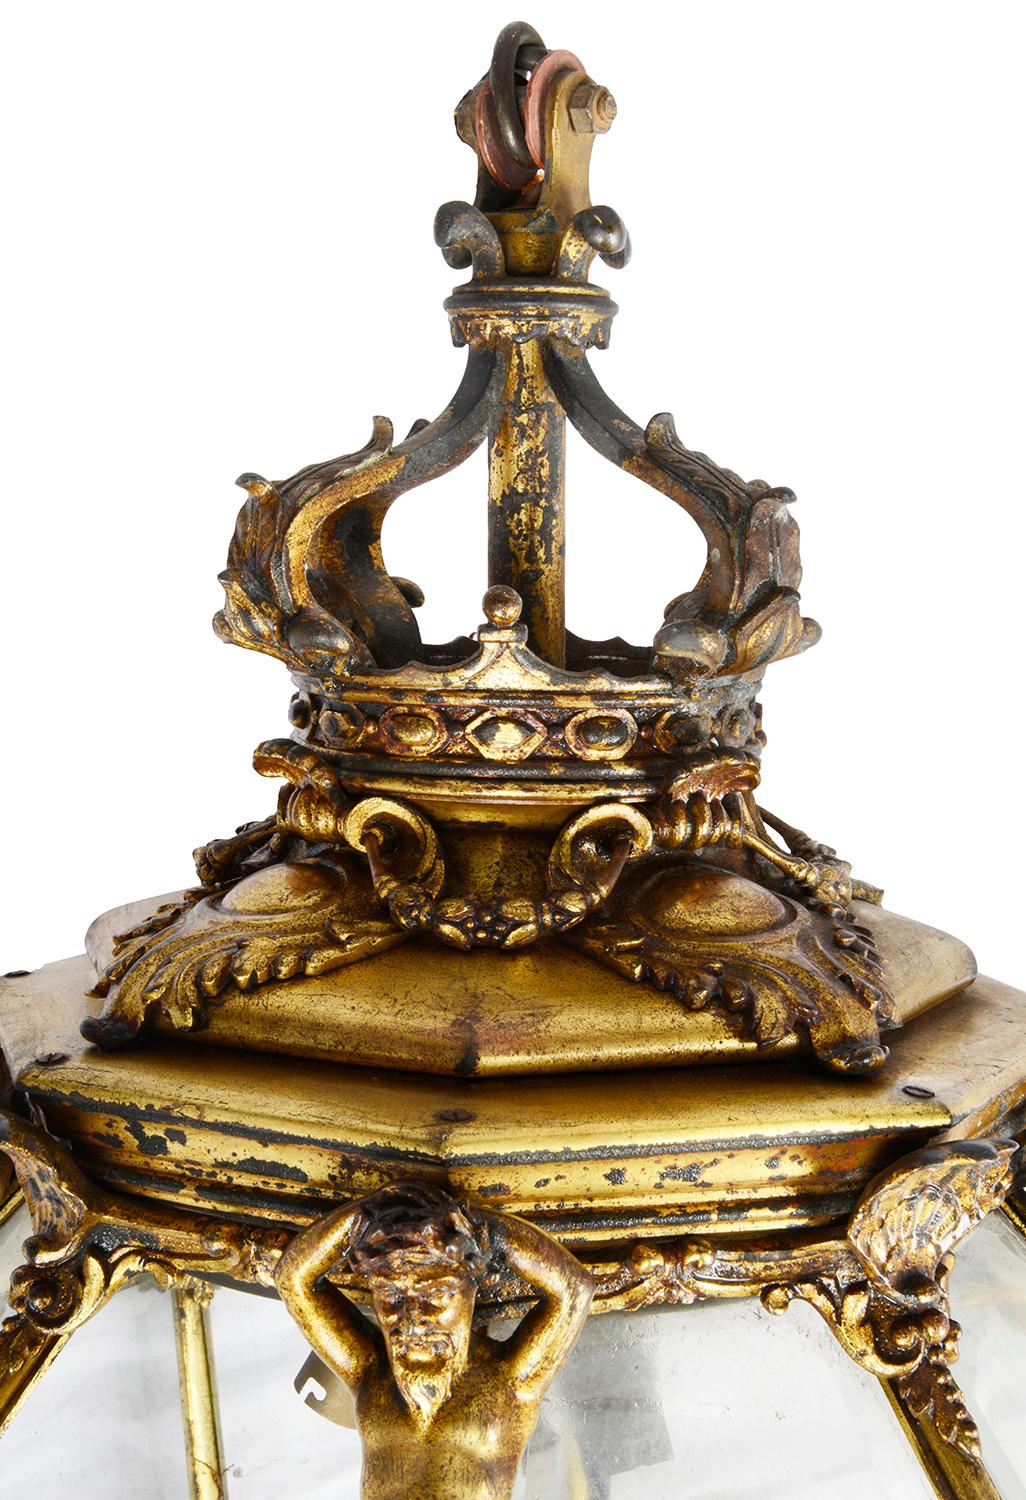 Lanterne hexagonale effilée en bronze doré, de très bonne qualité, datant du XIXe siècle. Elle est ornée d'une couronne, de coquillages et de montures de Neptune, de panneaux en verre biseauté et s'effile jusqu'à un épi de faîtage en bronze doré.